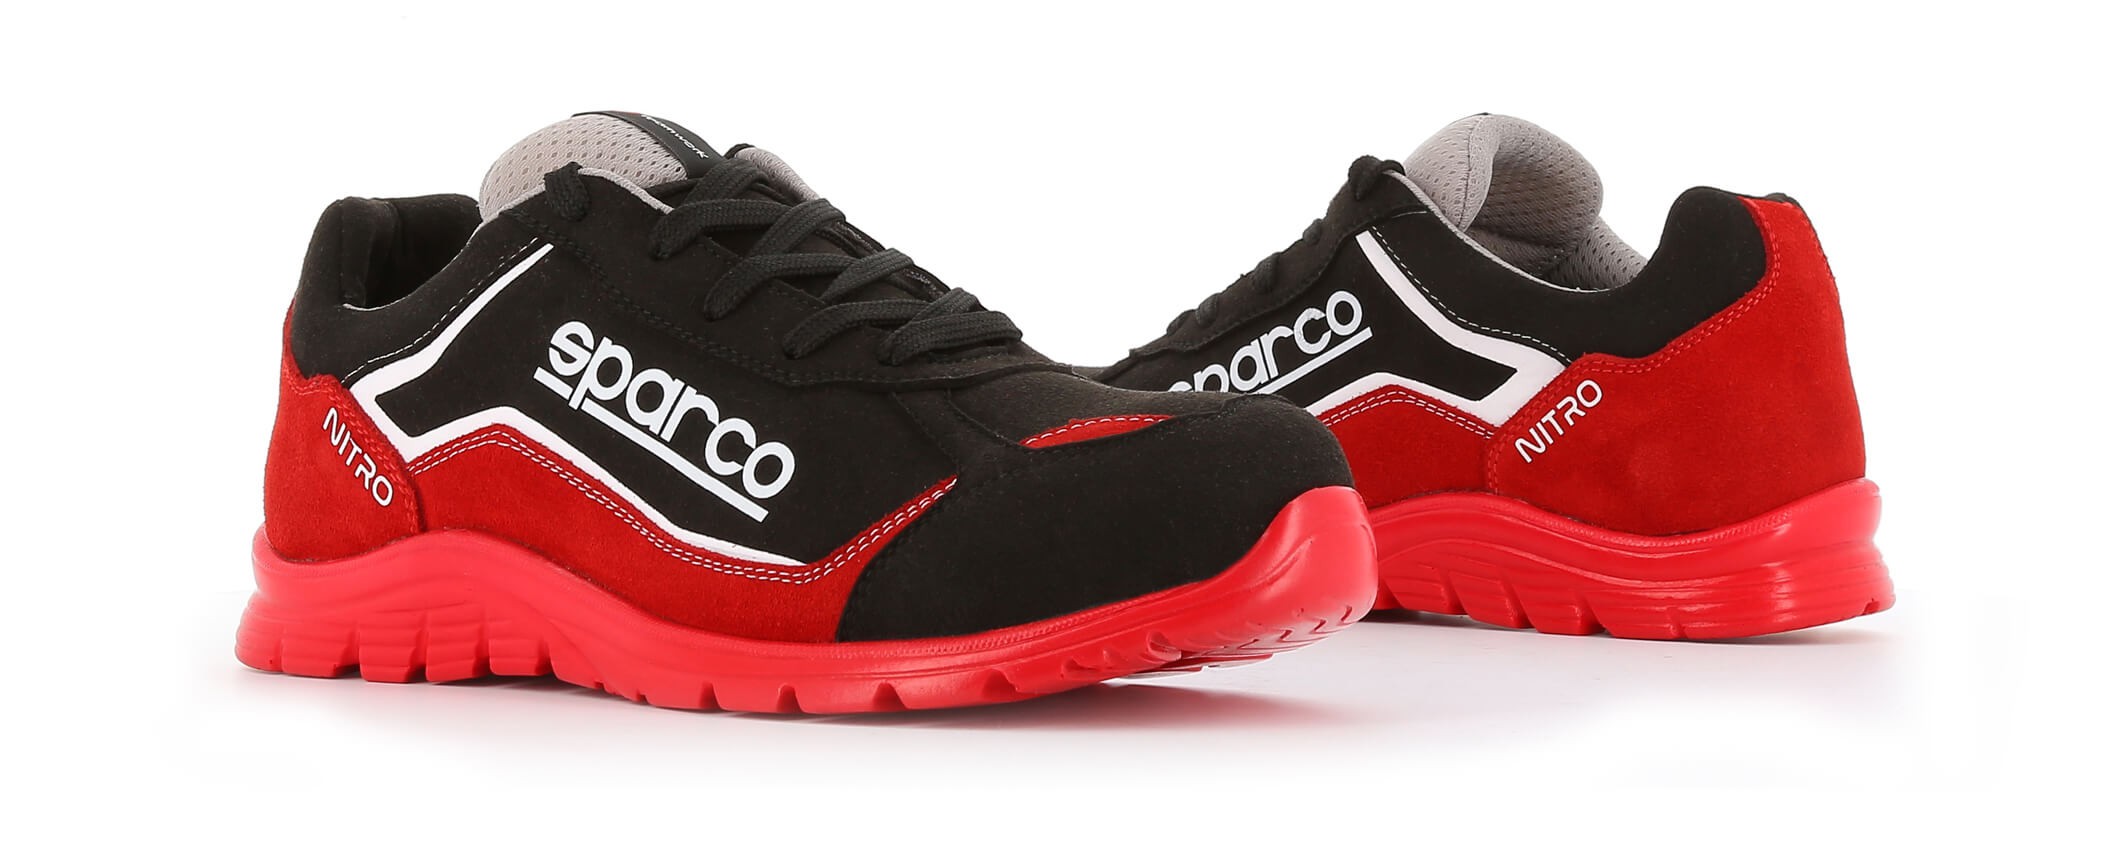 Basket securite souple nitro S3 rouge noir Sparco Chaussures-pro.fr